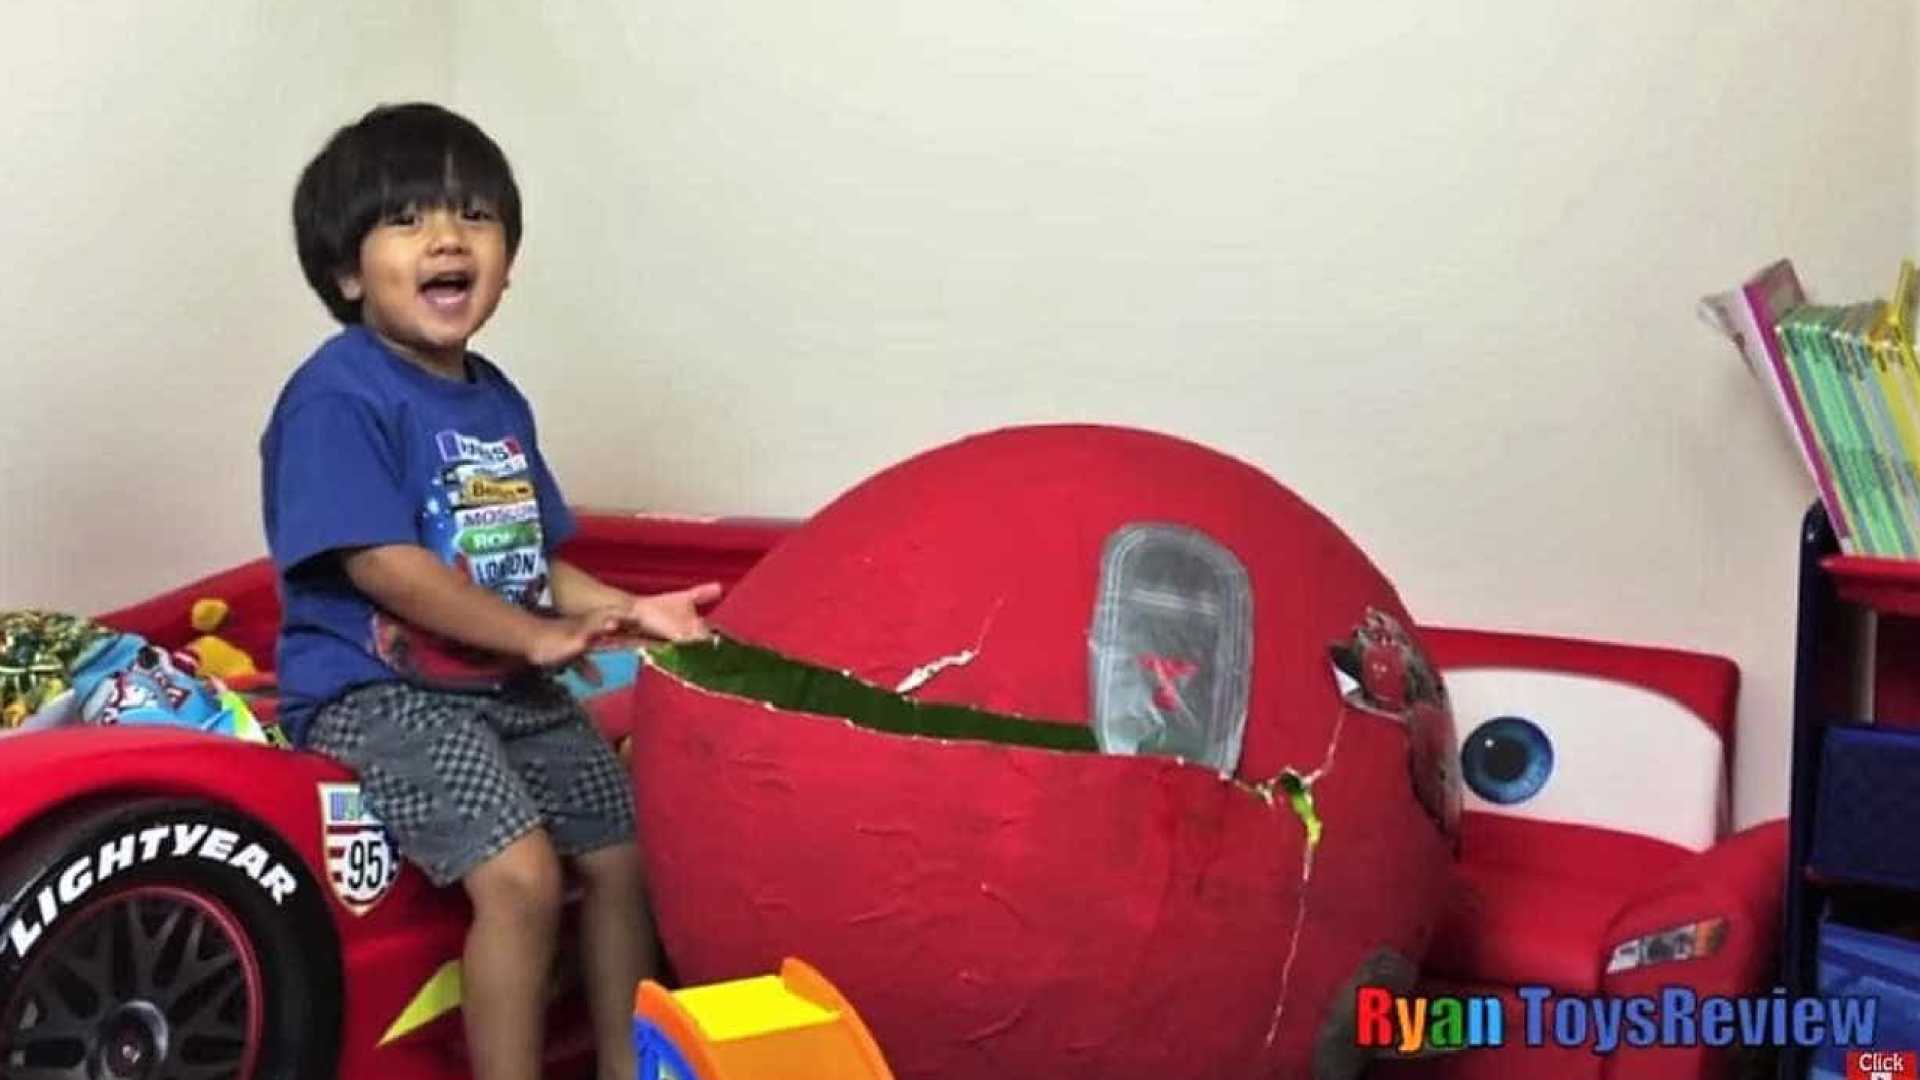 Criança de 6 anos faz vídeos sobre brinquedos na internet e já ganhou 11 milhões